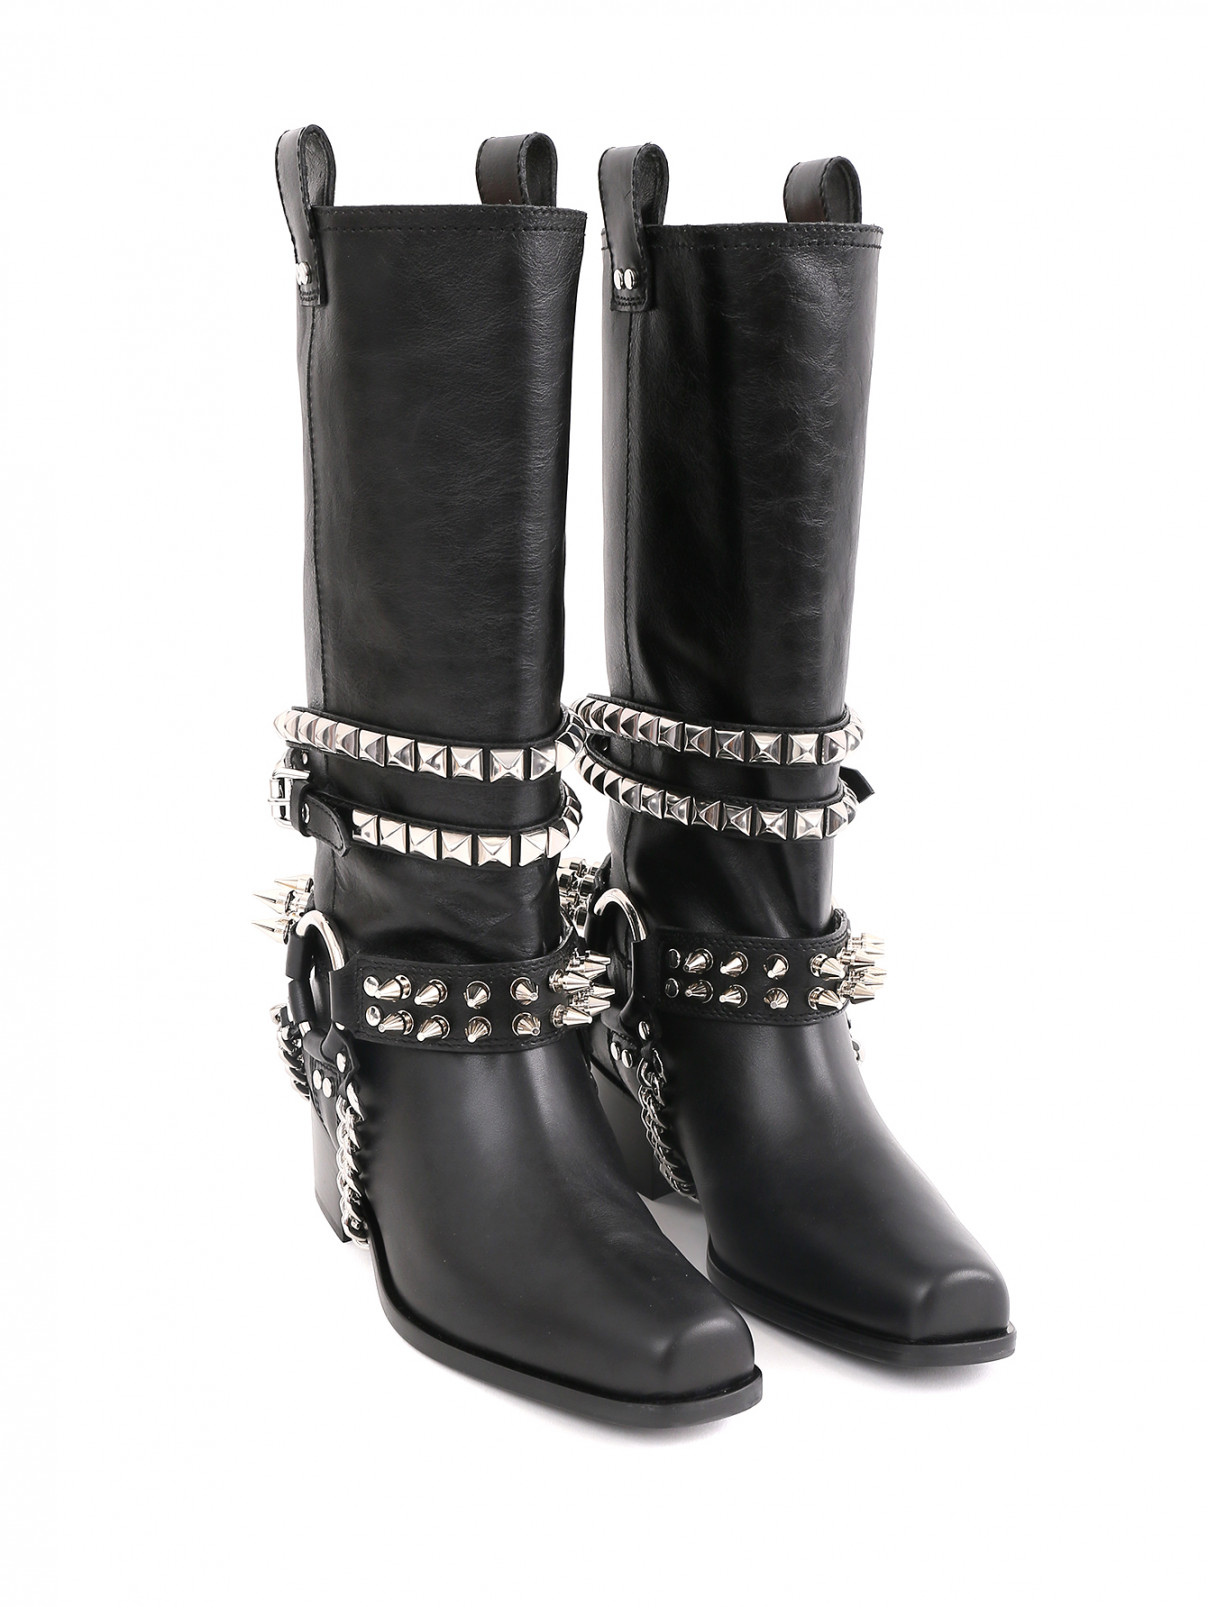 Сапоги на низком каблуке с металлическим декором Moschino Couture  –  Общий вид  – Цвет:  Черный